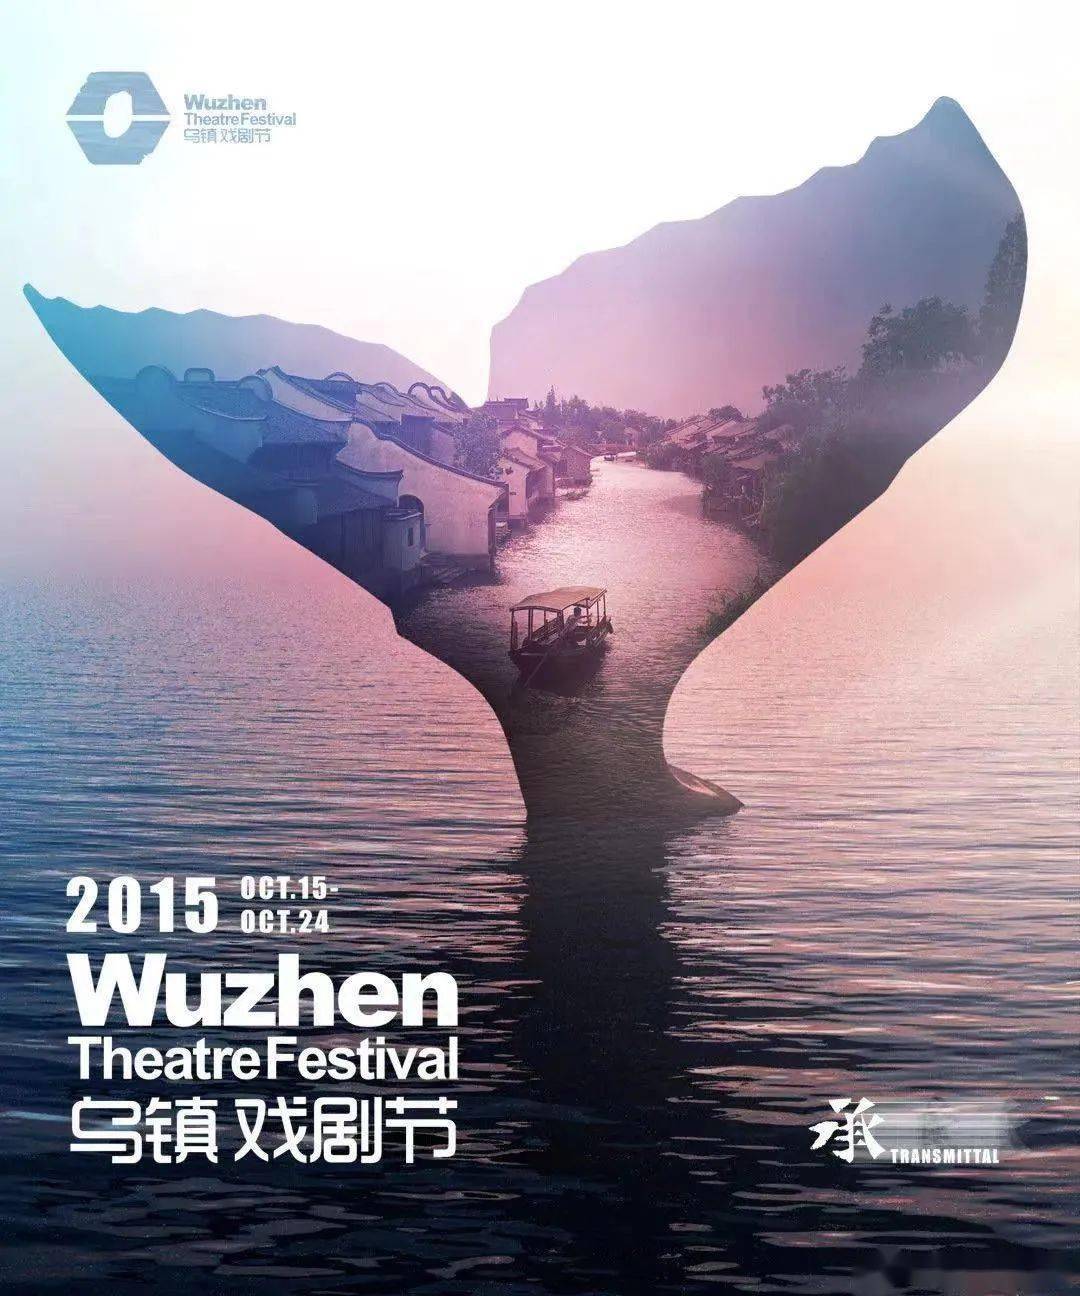 黄海设计「第八届乌镇戏剧节」动态海报来了!